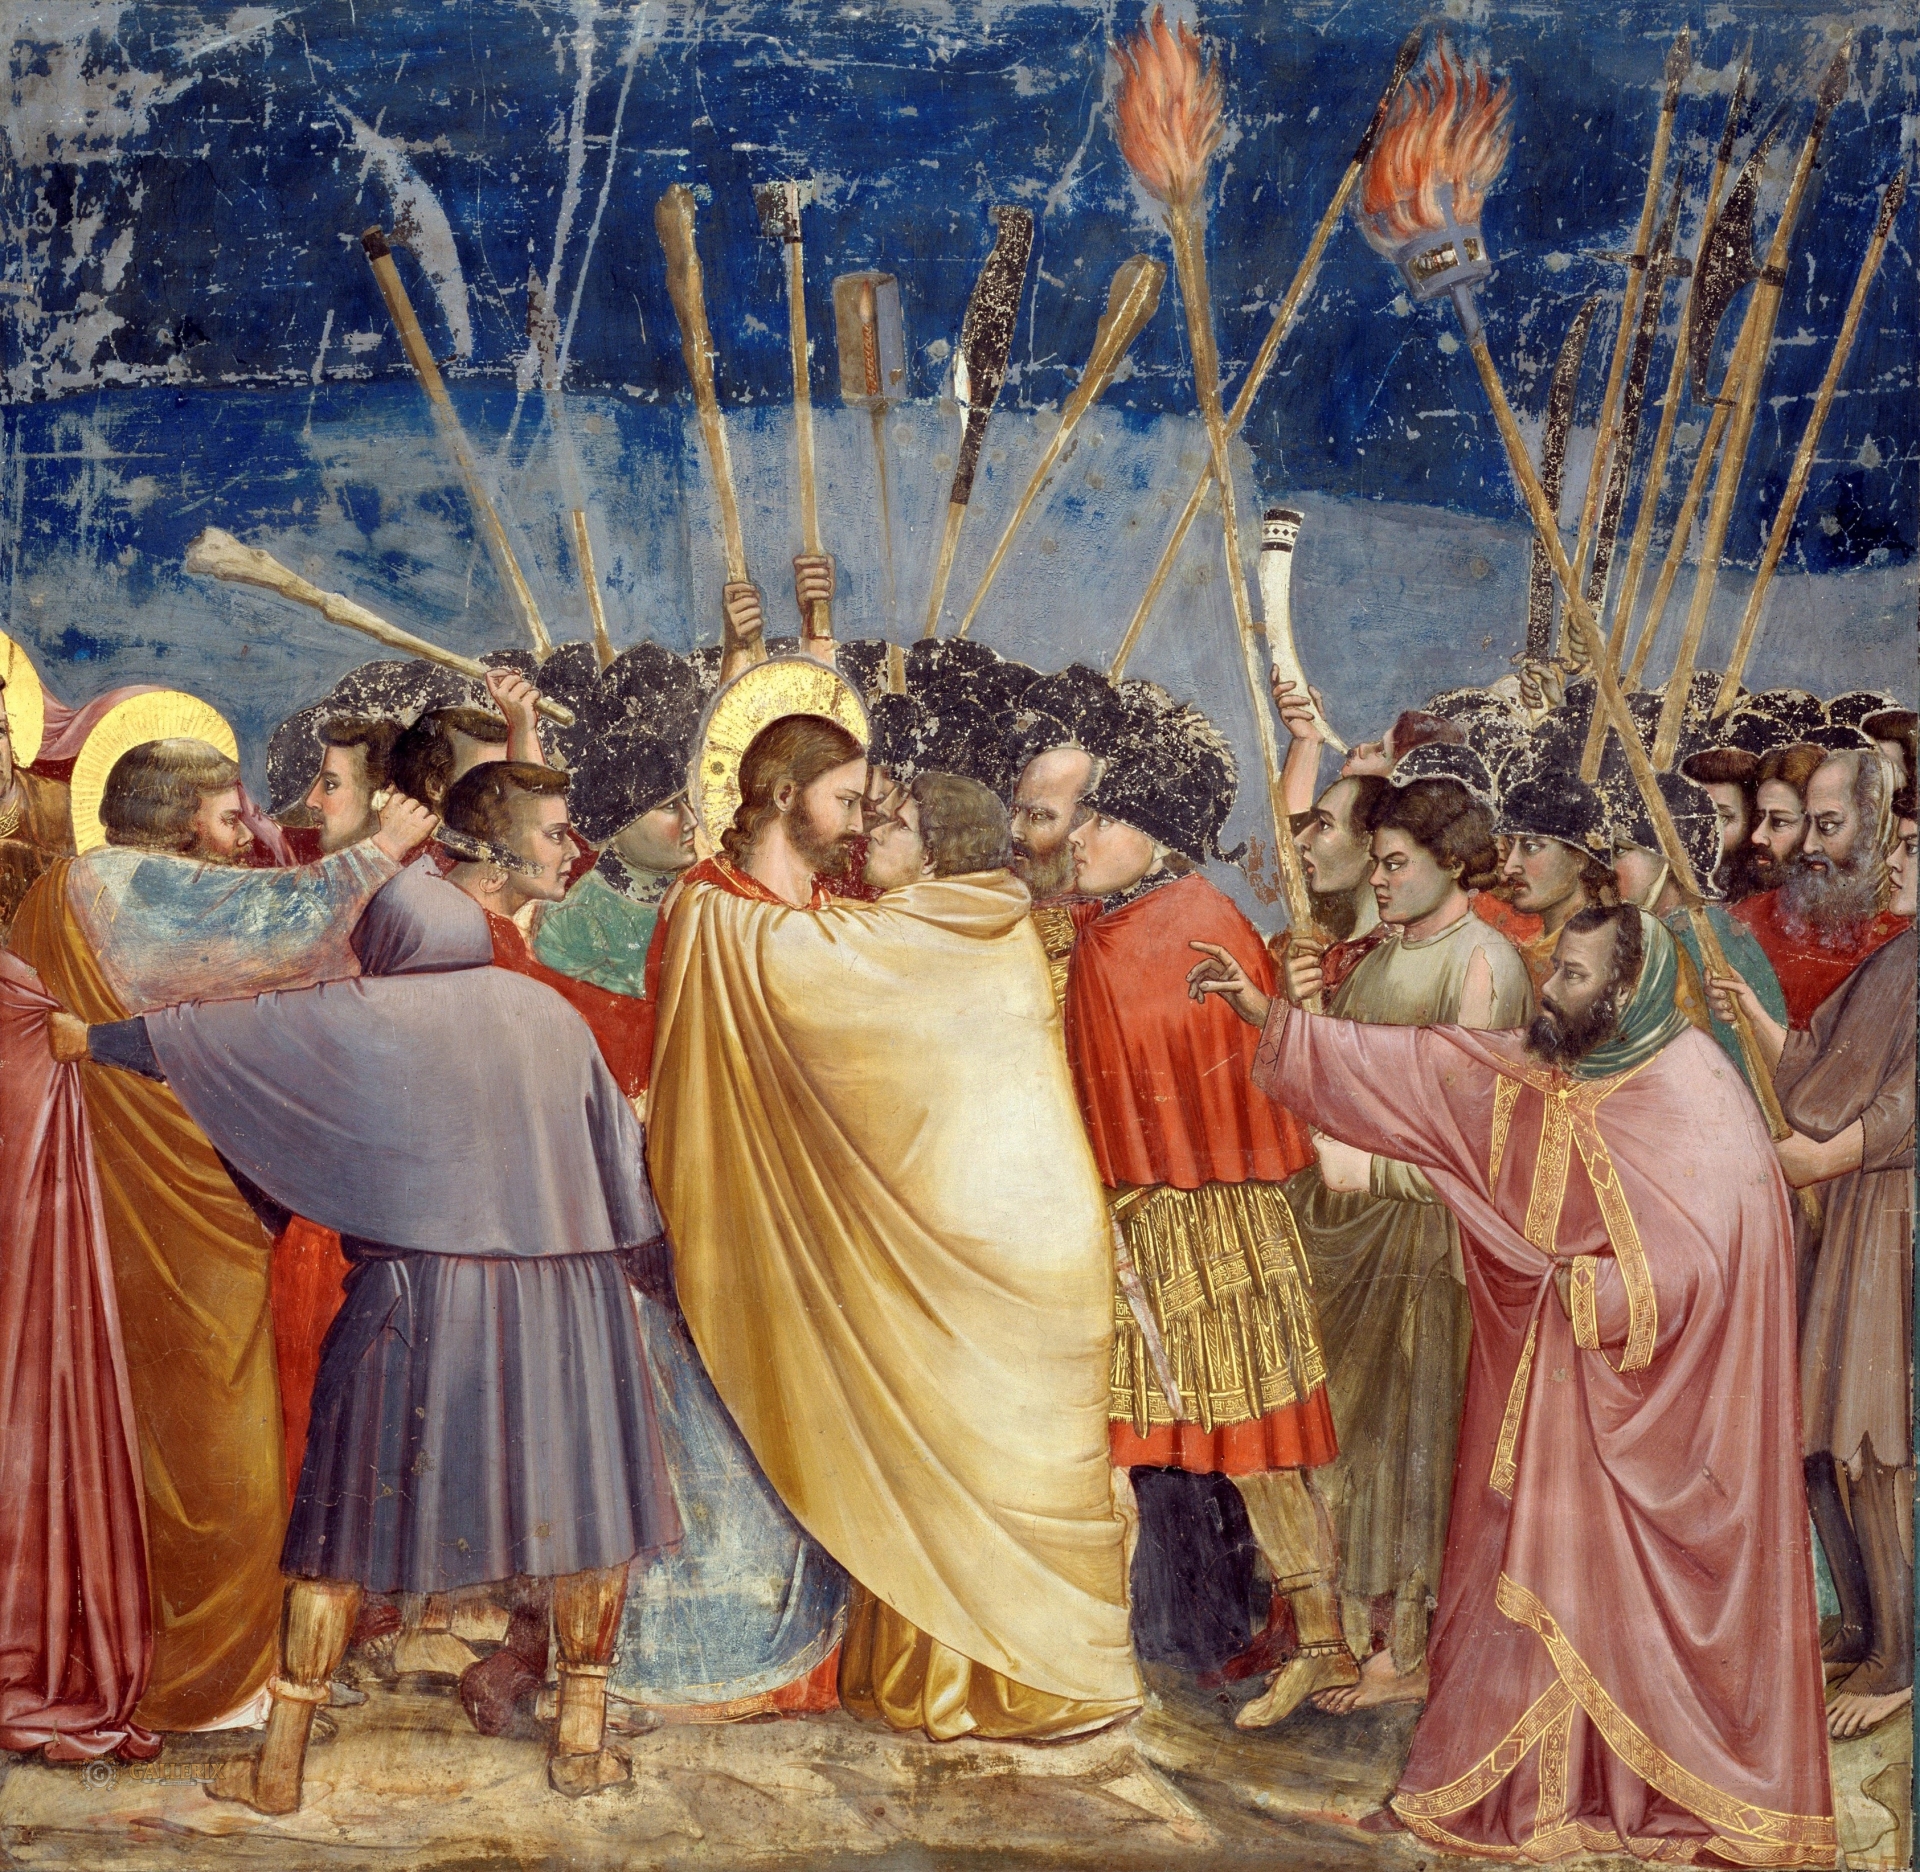 Kẻ phản chúa Judas mặc màu vàng nổi bật trong đám đông